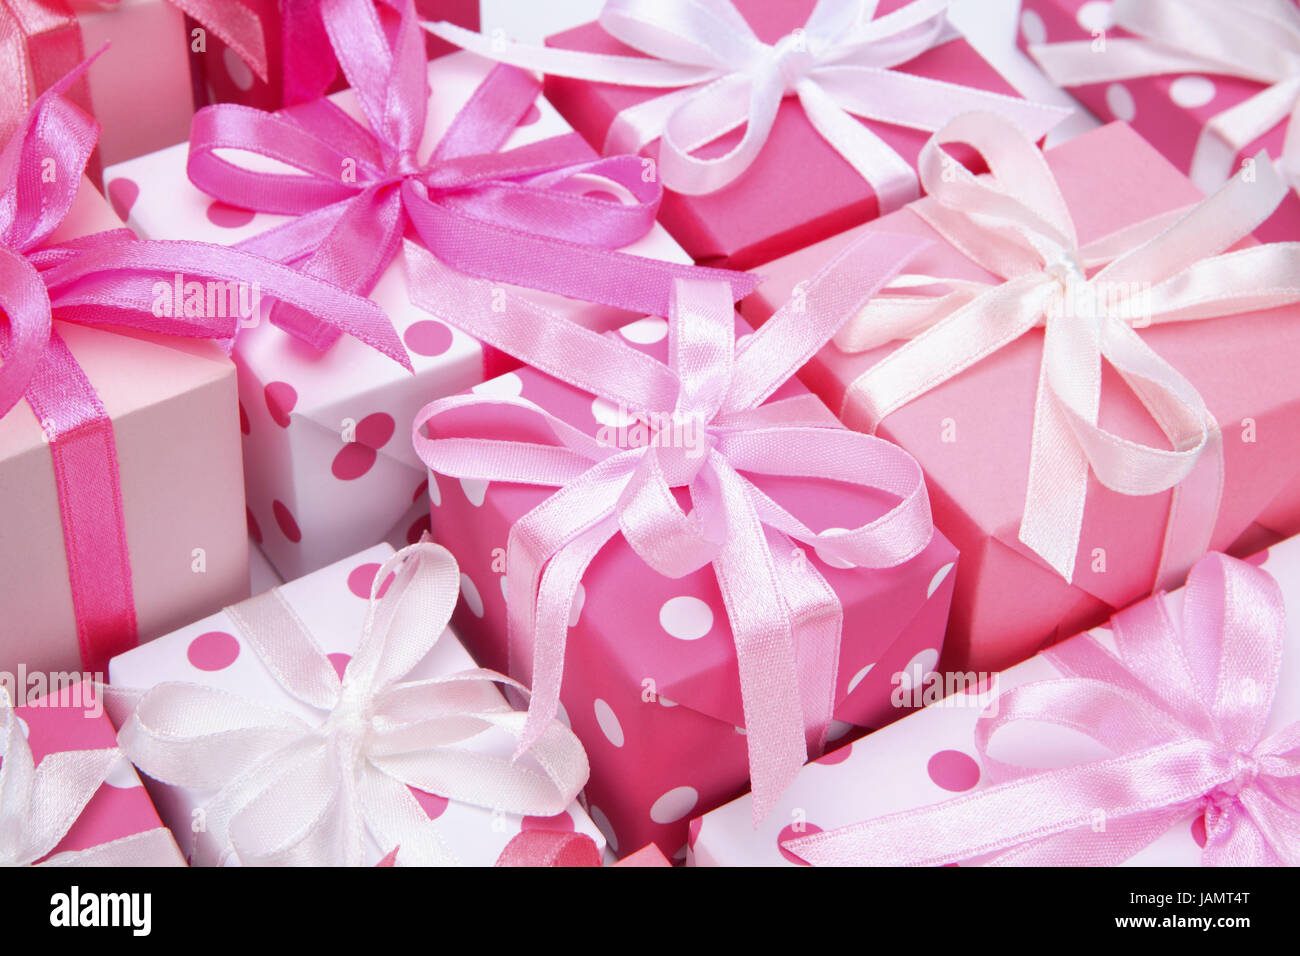 Geschenk-Paket, rosa, Weihnachten, Valentinstag, Geburtstag, Muttertag,  Jubiläum, Valentinsgeschenke, Geburtstagsgeschenke, Geschenke zum  Muttertag, Weihnachtsgeschenke, klein, süß, präsentiert, präsentiert,  Packungen, liebevoll, Schleifen, spot